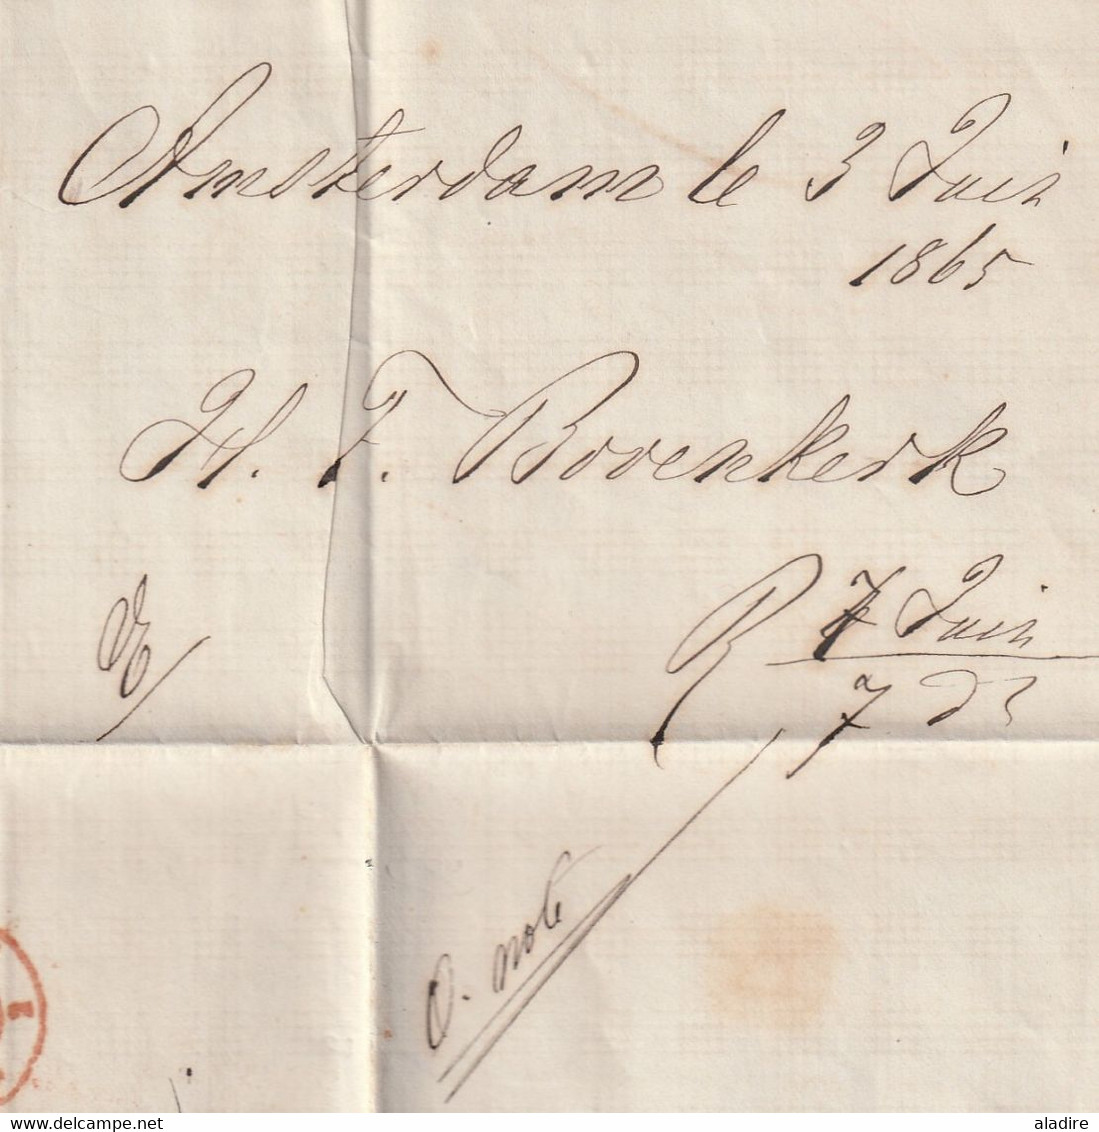 1865 - Lettre pliée avec correspondance en français d' AMSTERDAM, Pays Bas vers Montpellier, France